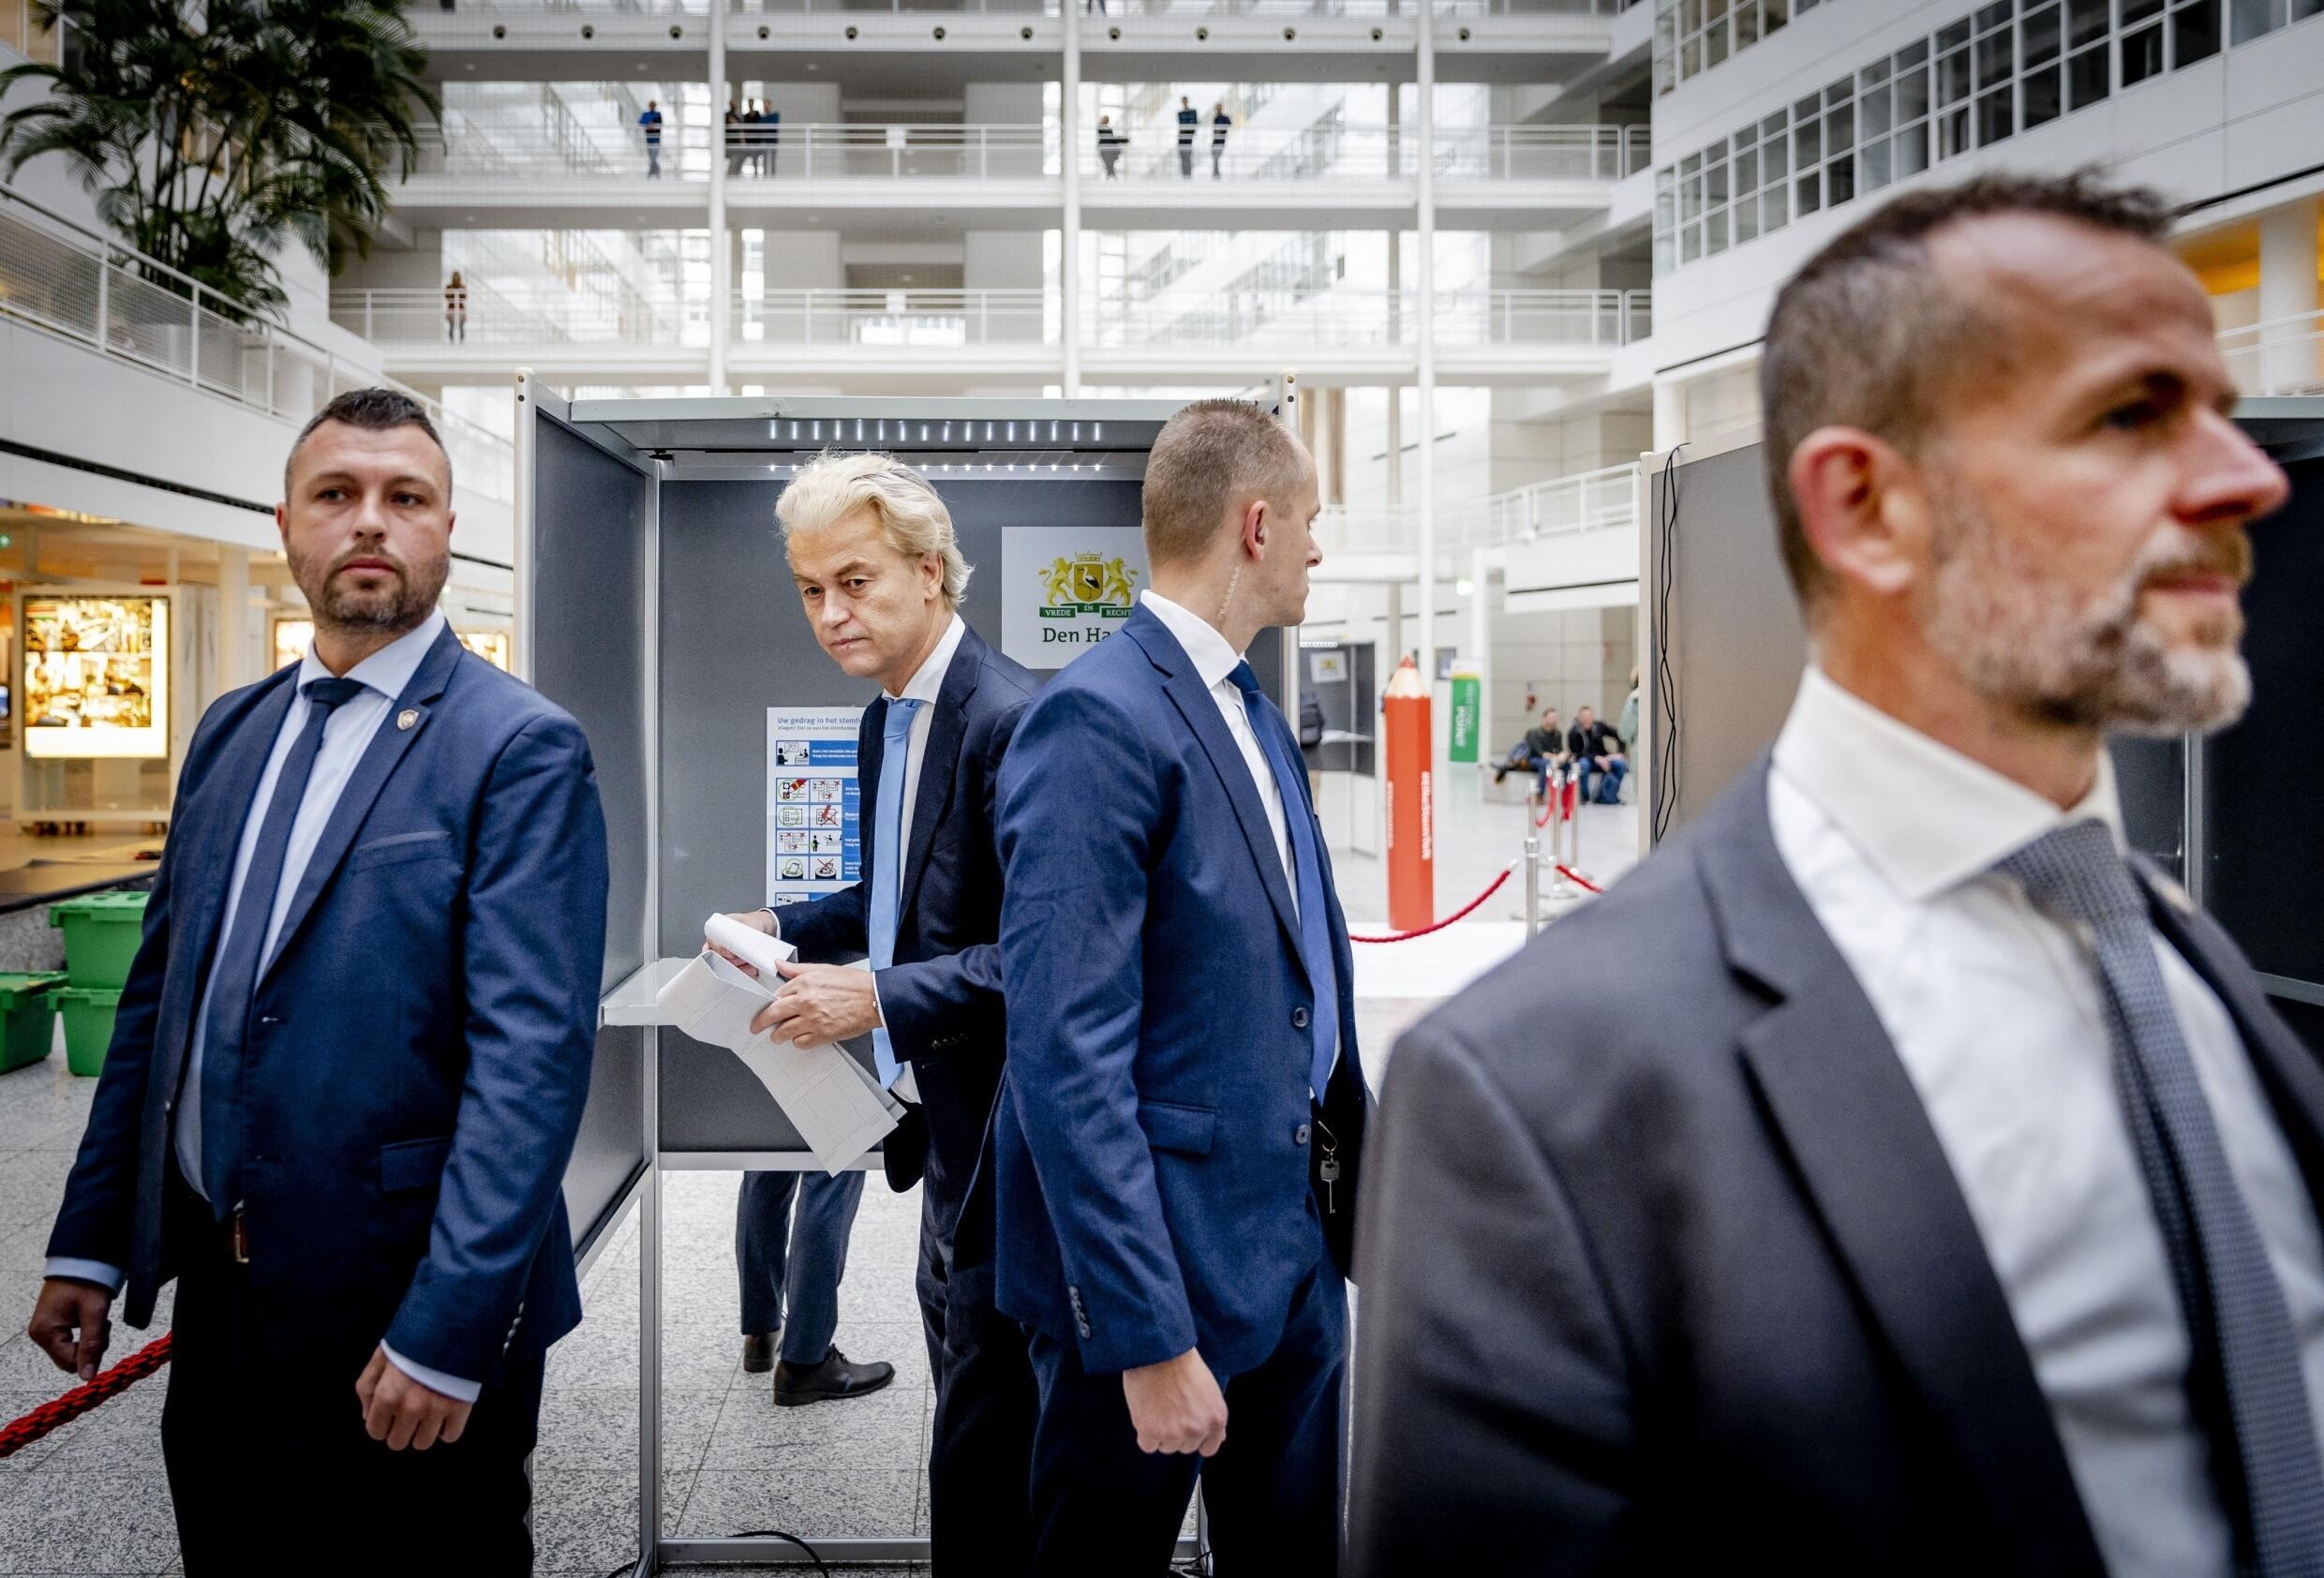 Geert Wilders przygotowuje się do oddania głosu, podczas gdy ochroniarze stoją przy nim podczas wyborów powszechnych w 2023 roku.